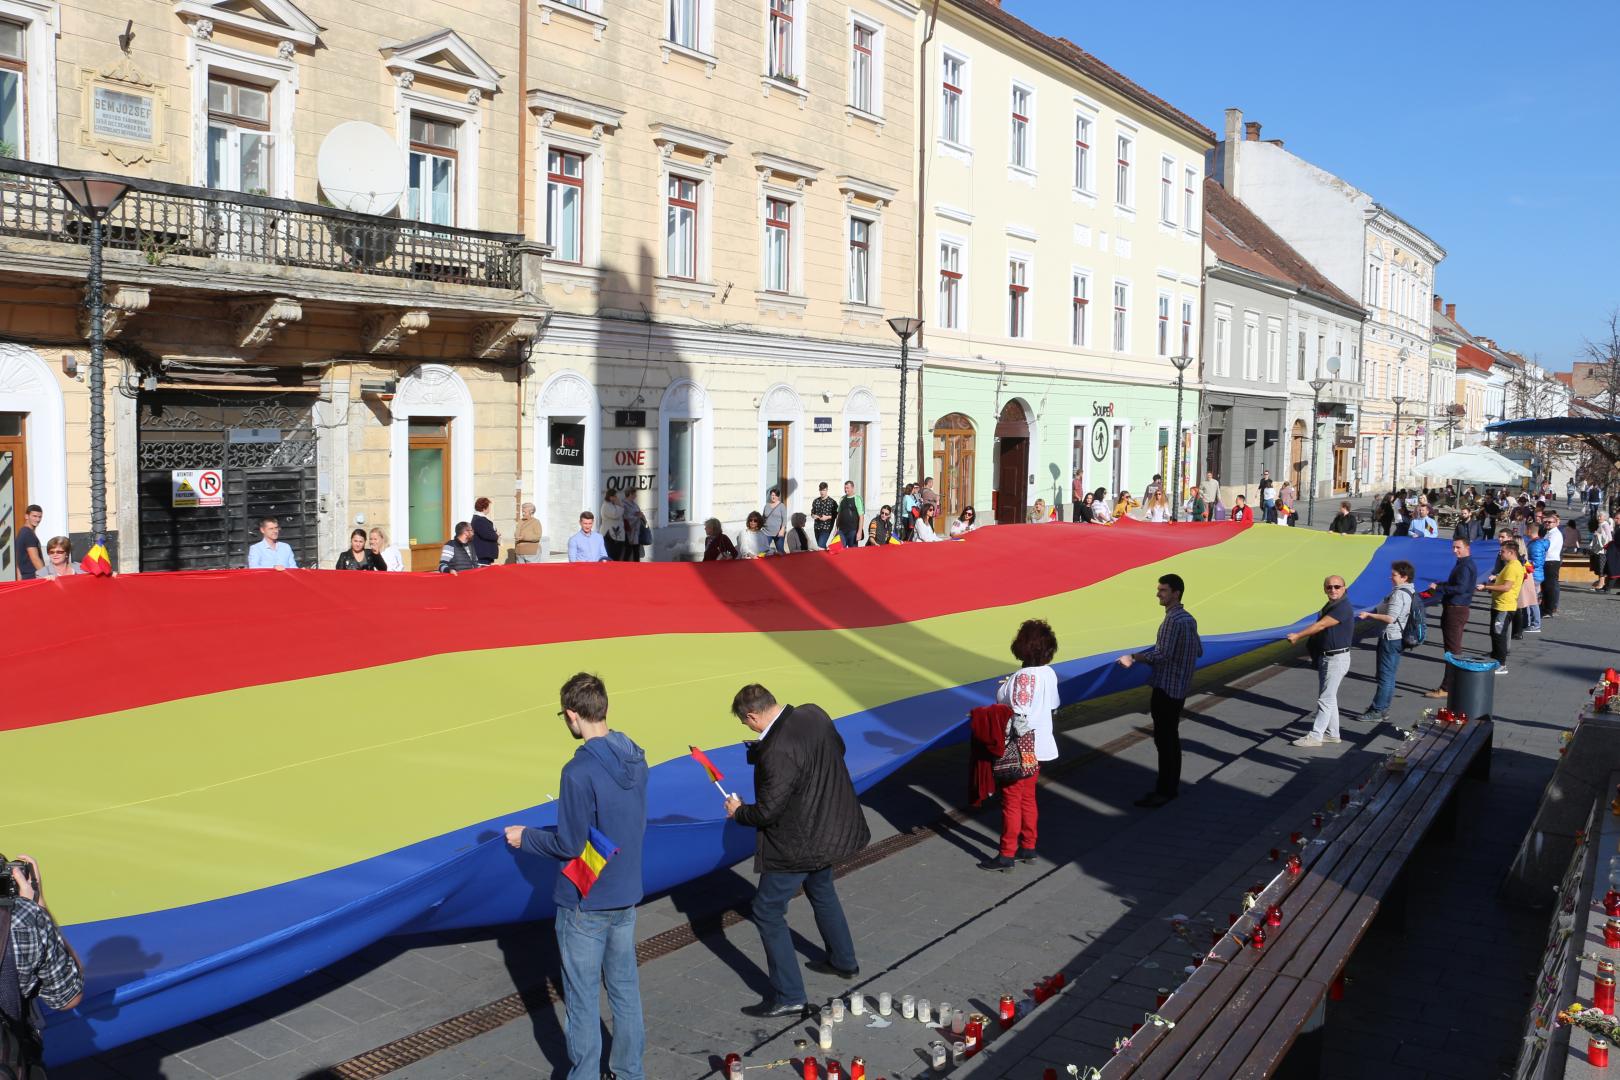 Tricolor cât un bloc cu 10 etaje, desfășurat în centrul Clujului